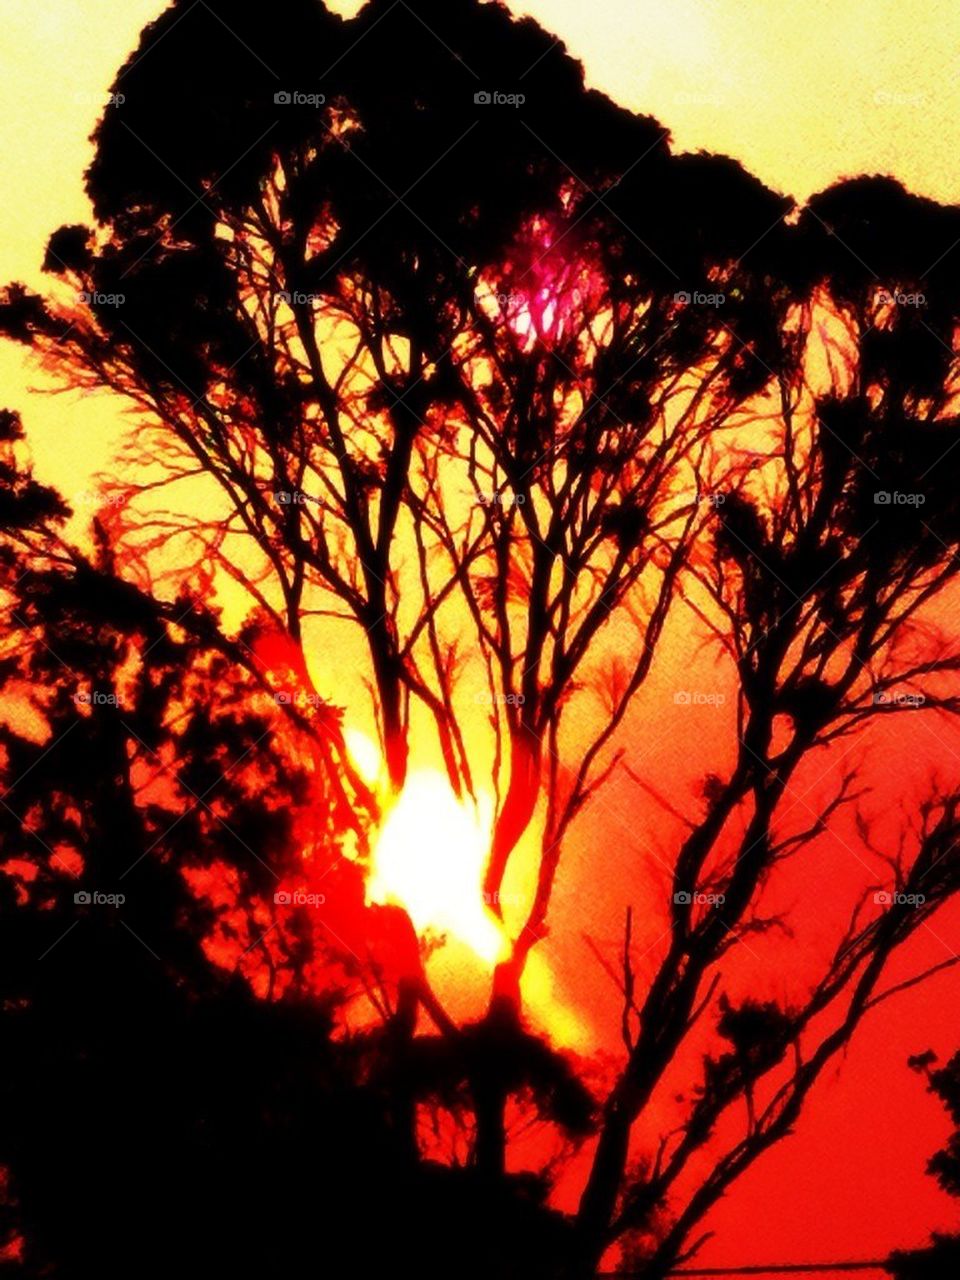 Sydney bushfires oct 2013